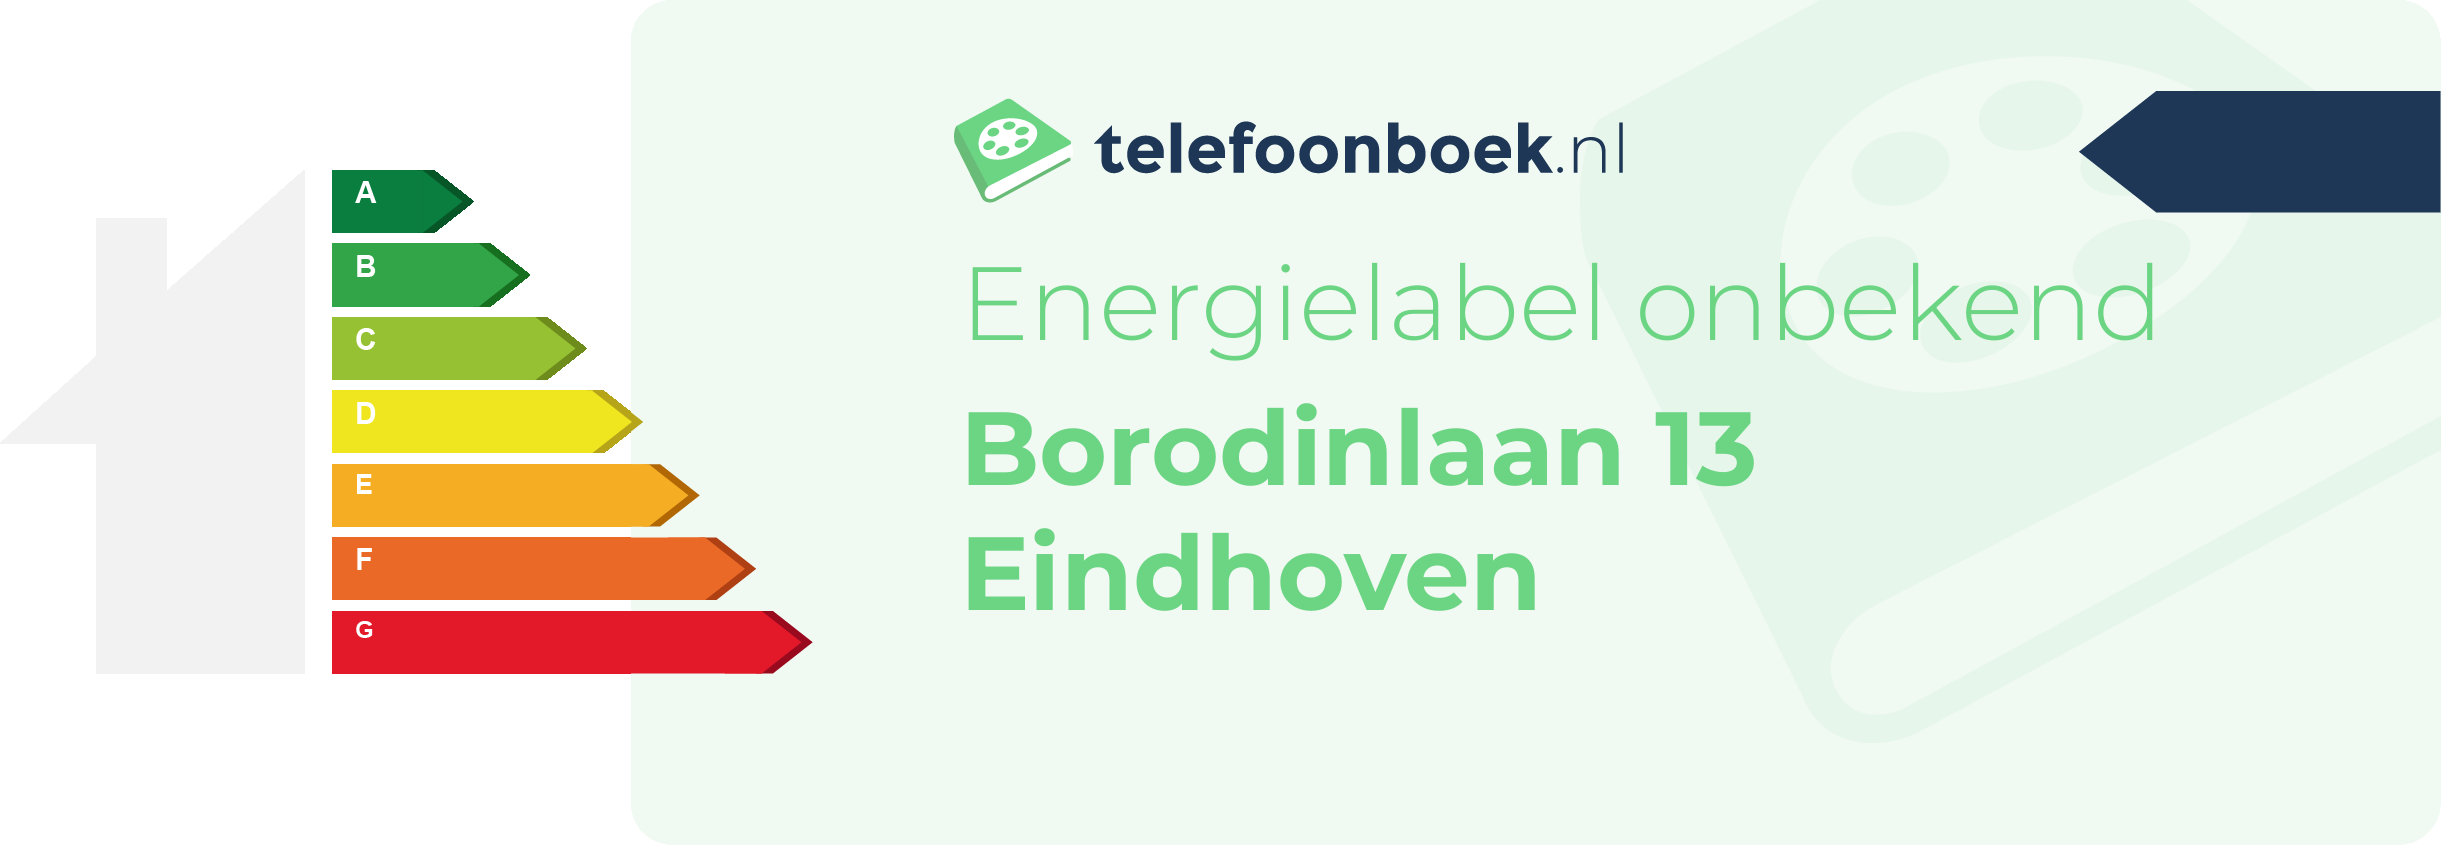 Energielabel Borodinlaan 13 Eindhoven